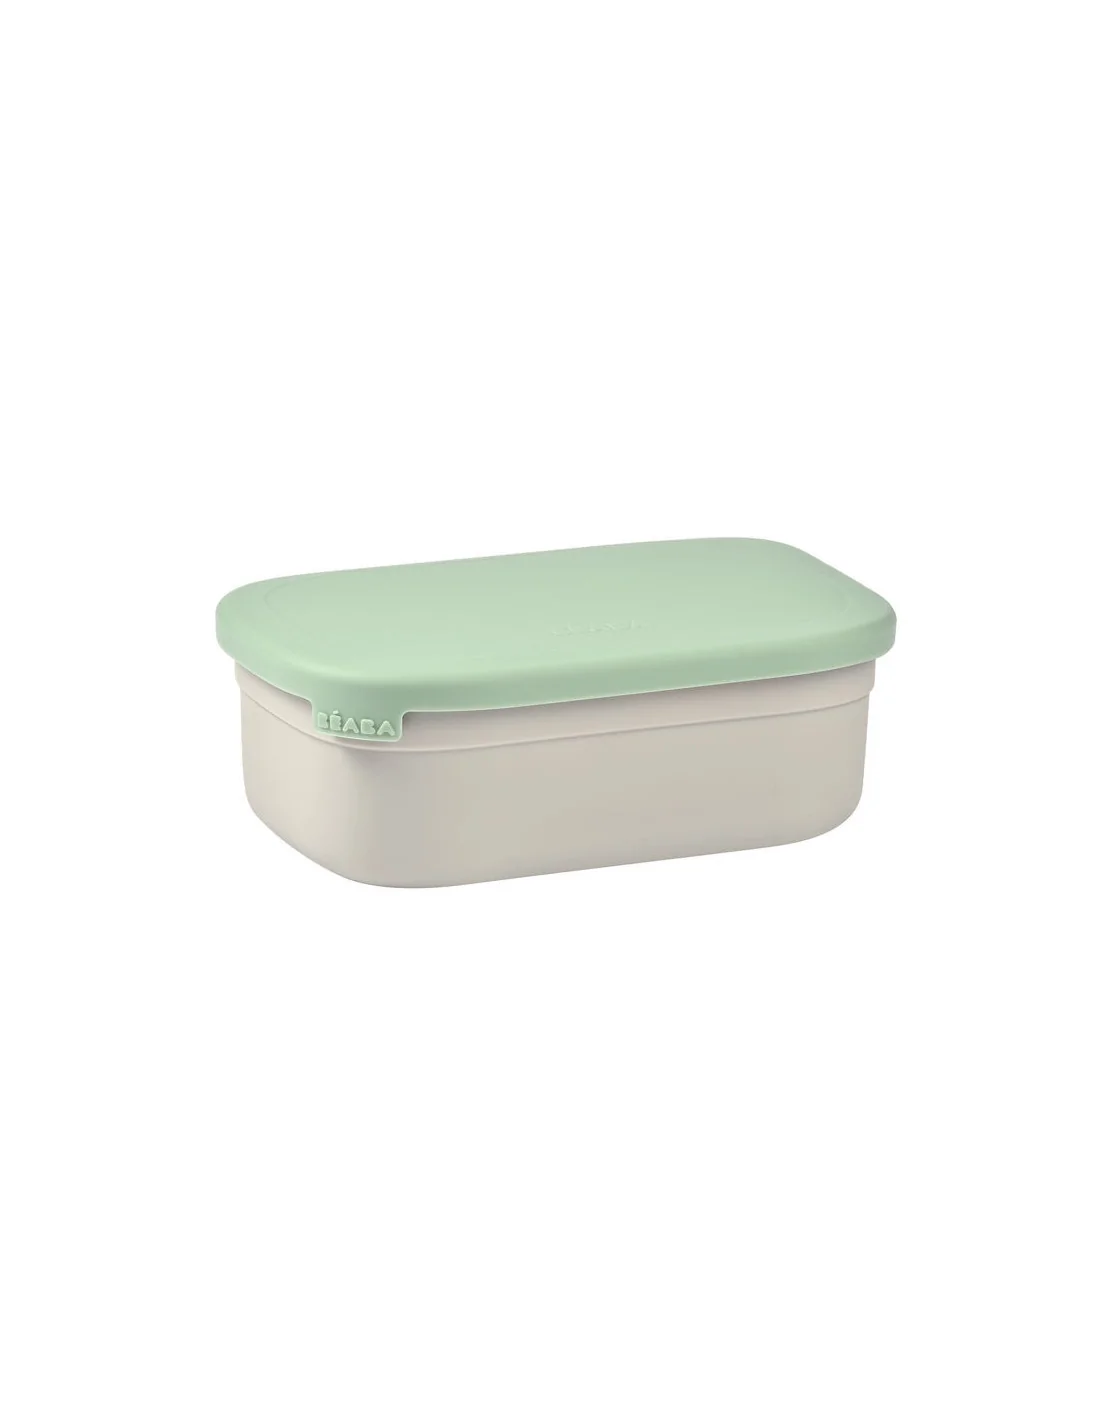 Béaba Lunch Box en Inox Compartimenté Vert au Maroc - Baby And Mom